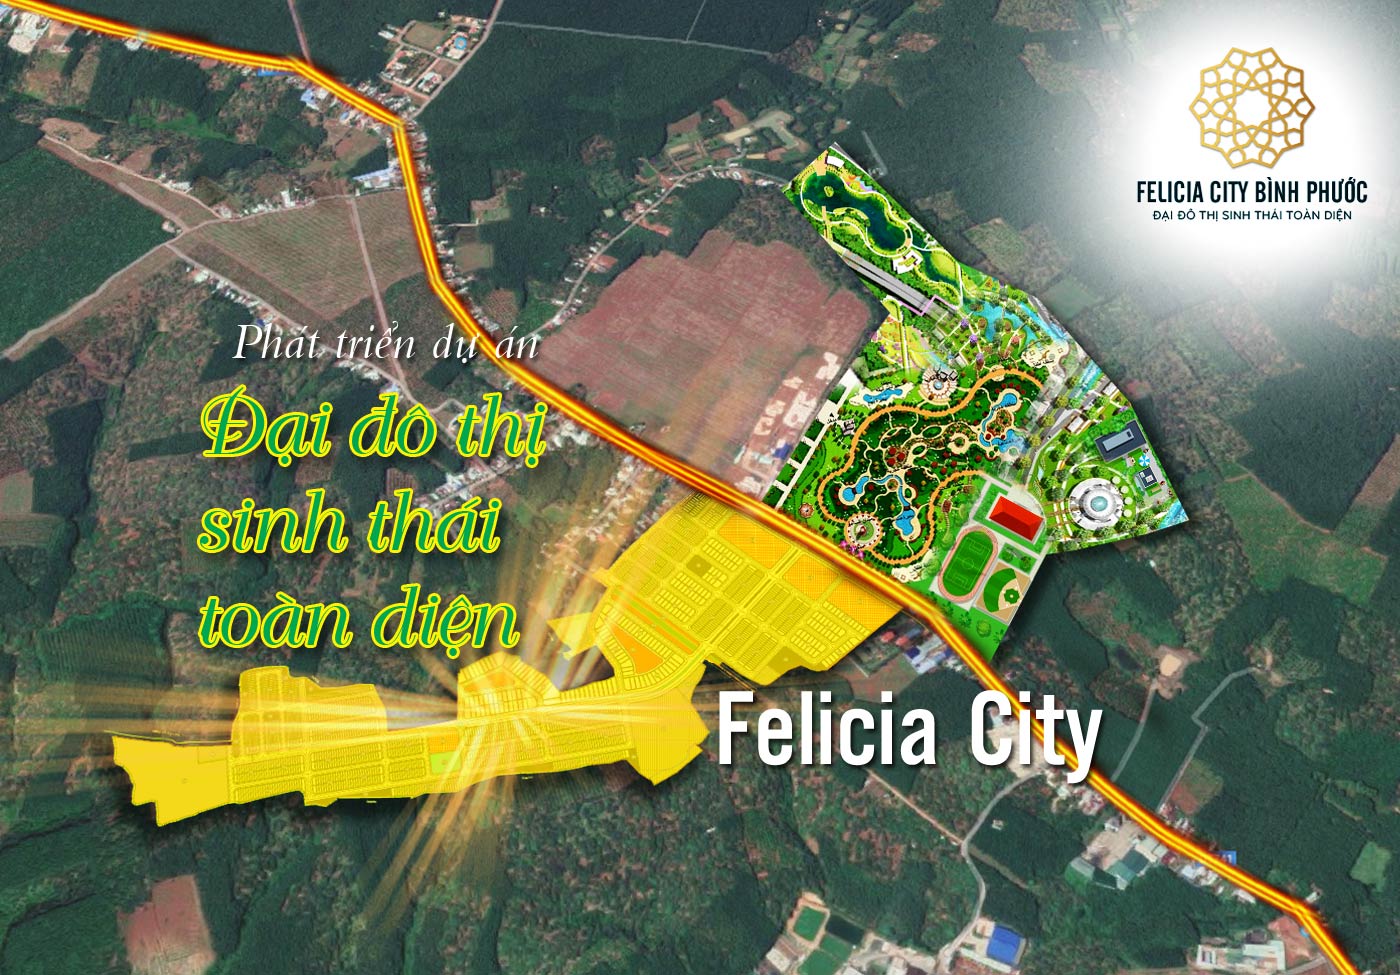 Phát triển dự án Đại đô thị sinh thái toàn diện Felicia City - Ảnh 1